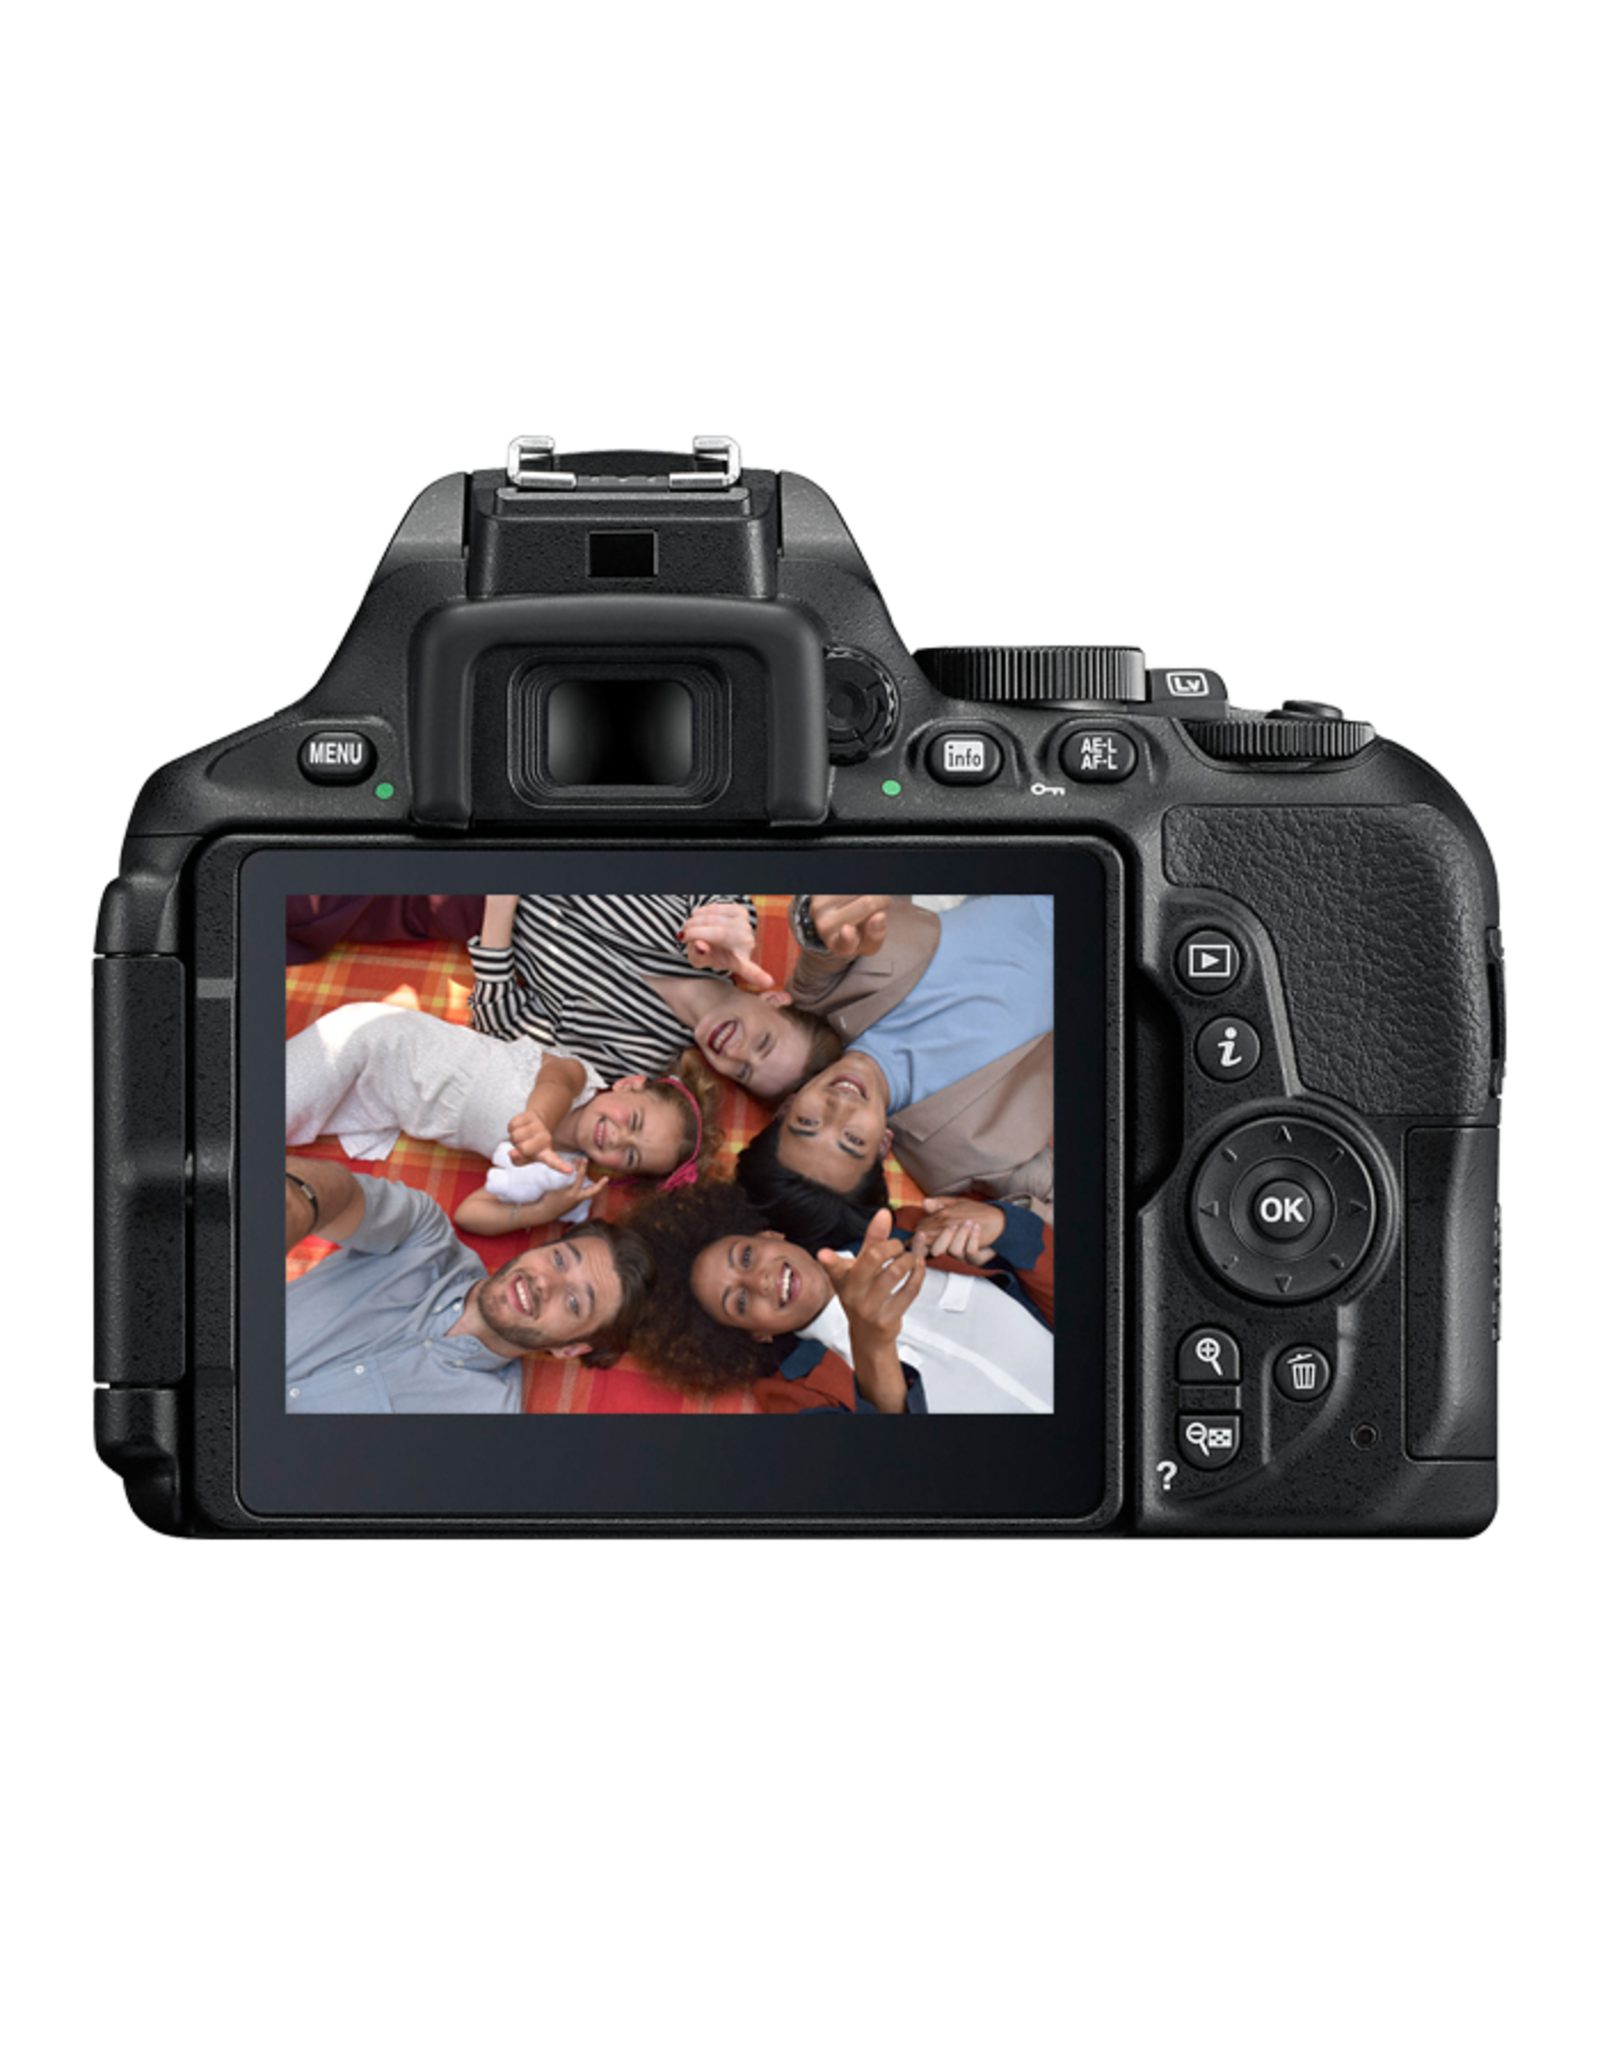 Nikon Nikon D5600 DSLR Camera with 18-55mm Lens (Black)